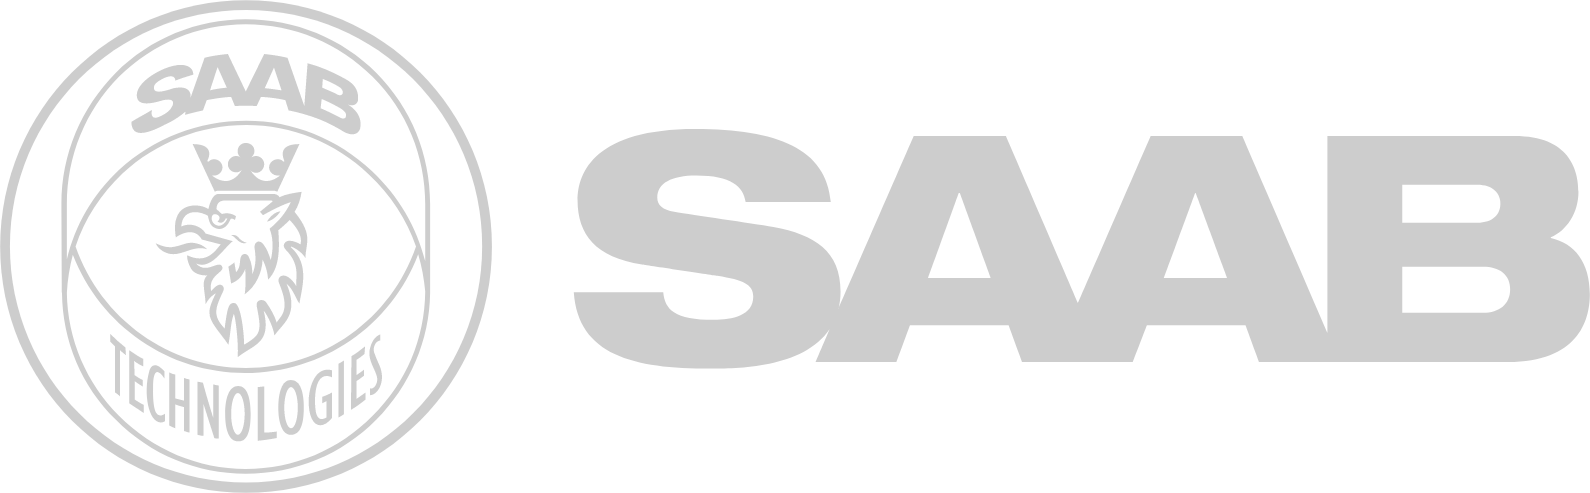 SAAB AB logo large for dark backgrounds (transparent PNG)